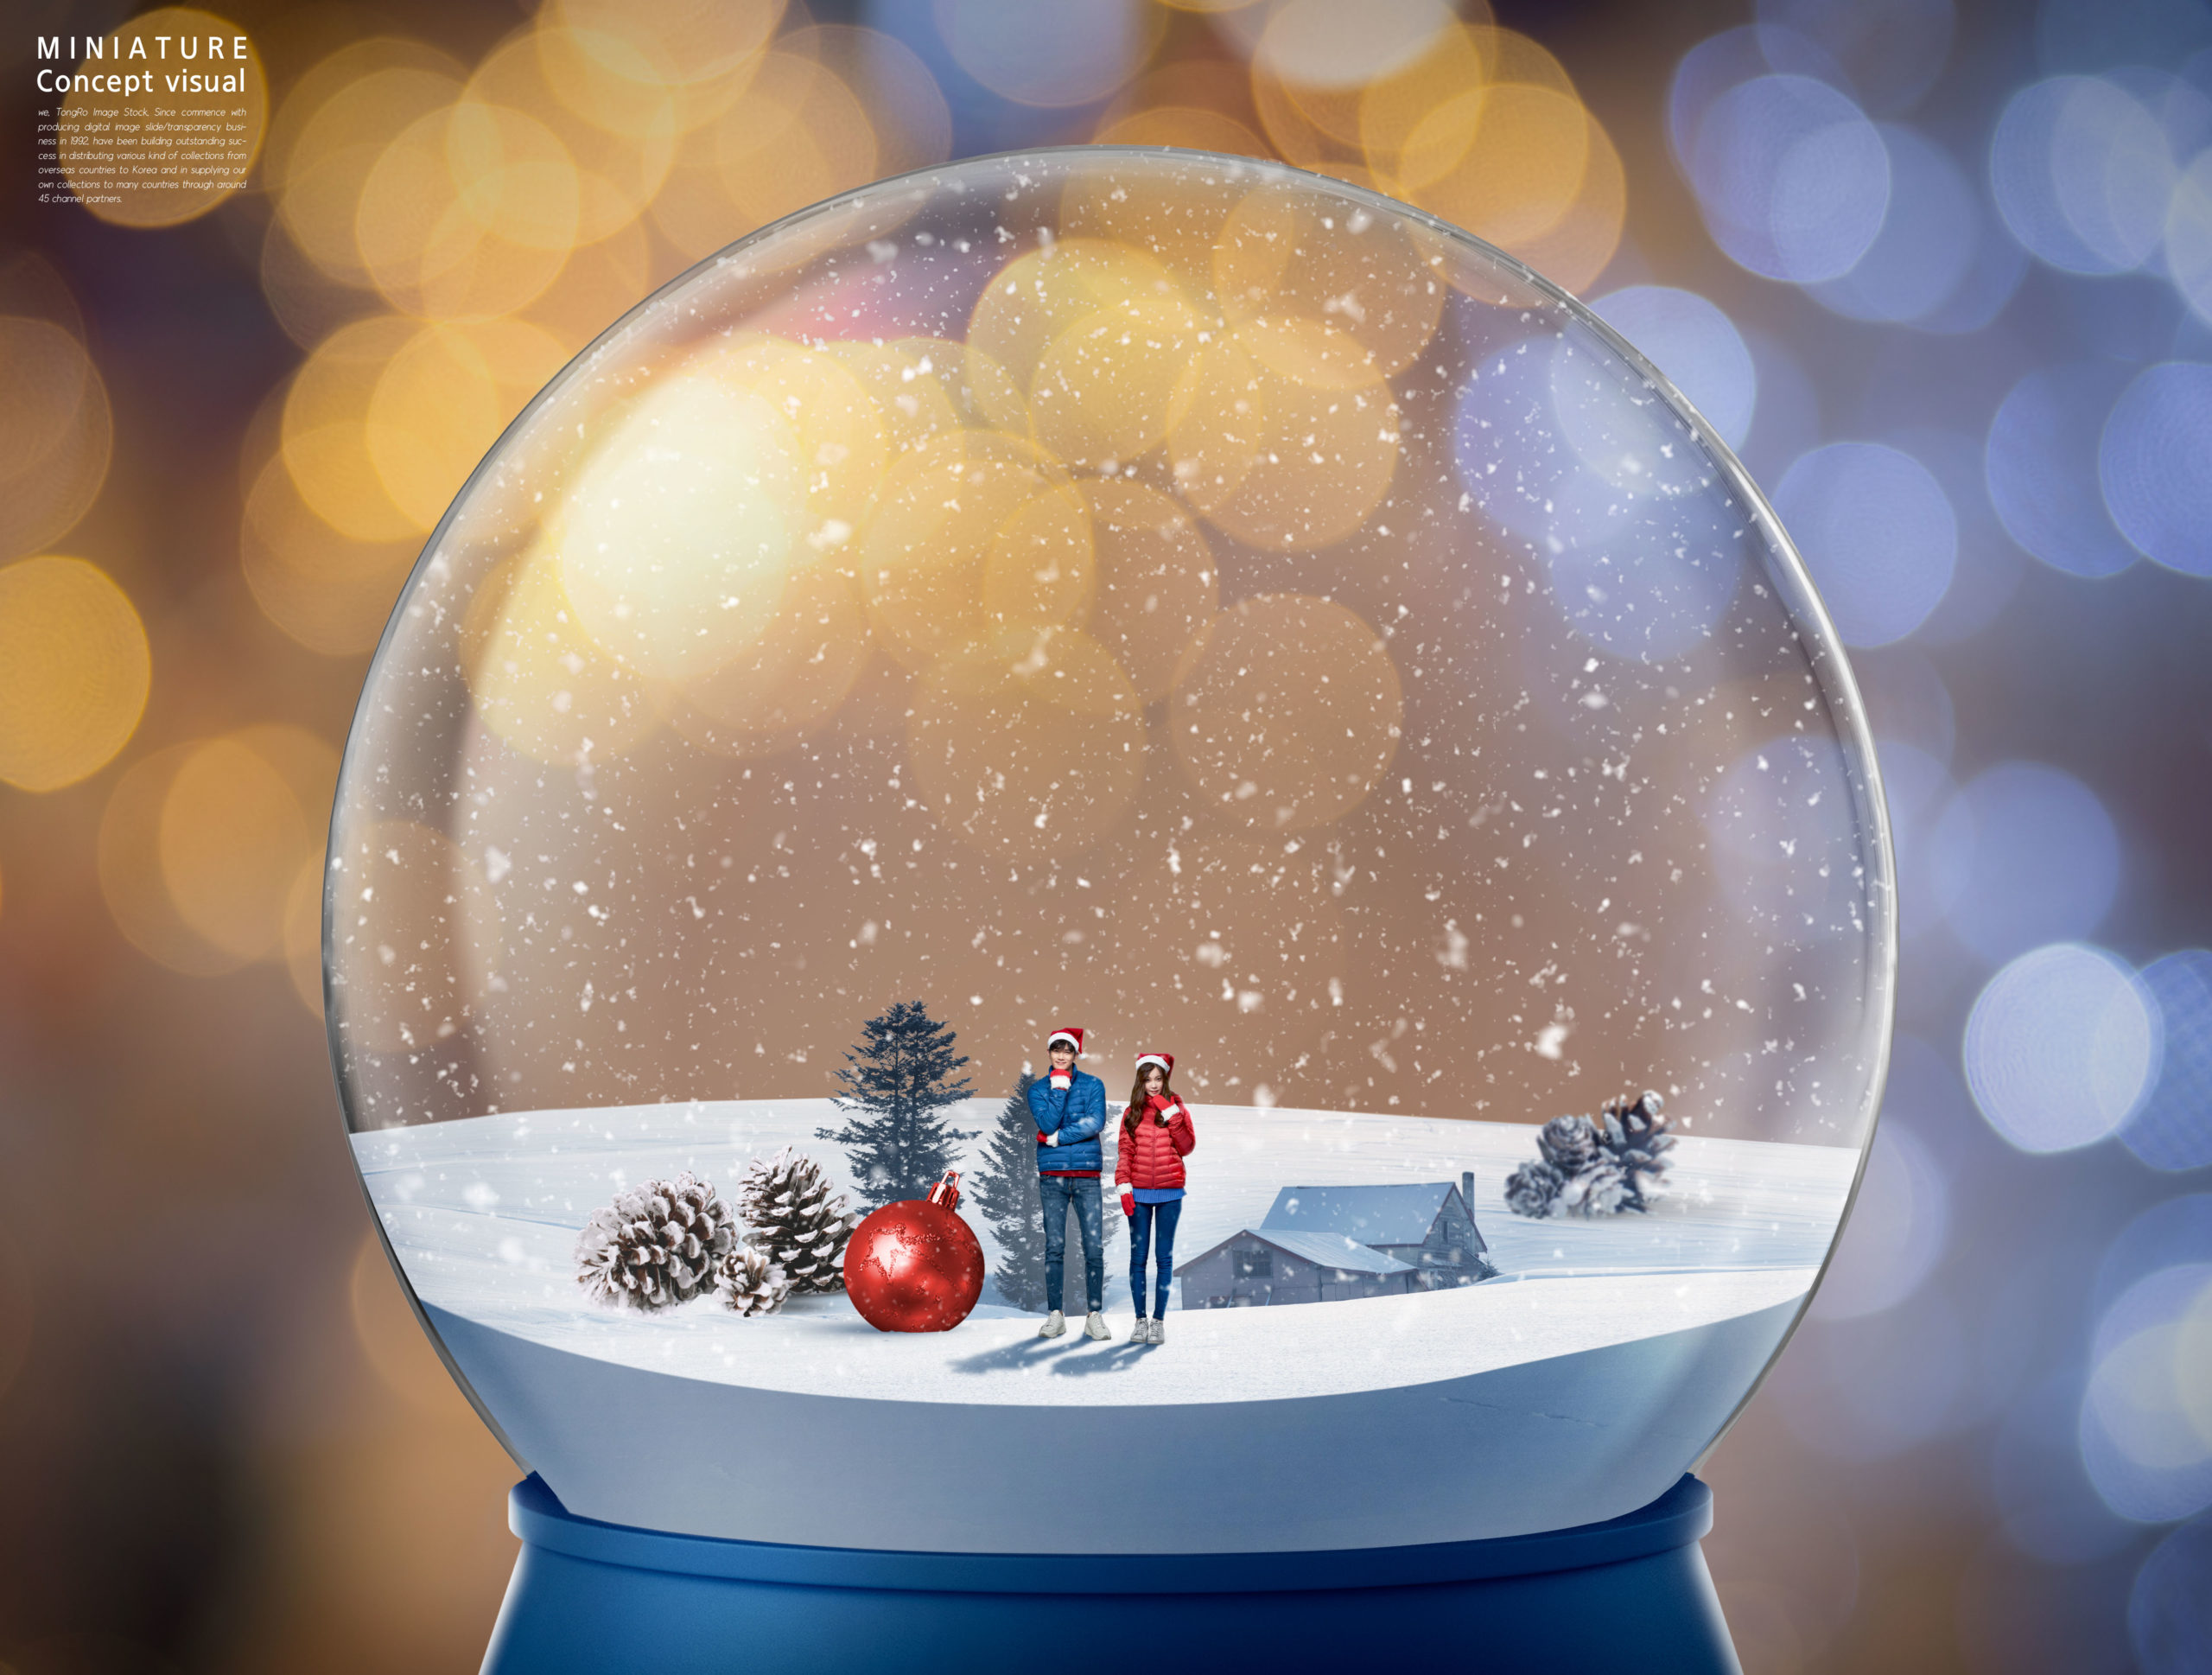 微型视觉圣诞雪球冬季场景psd素材插图